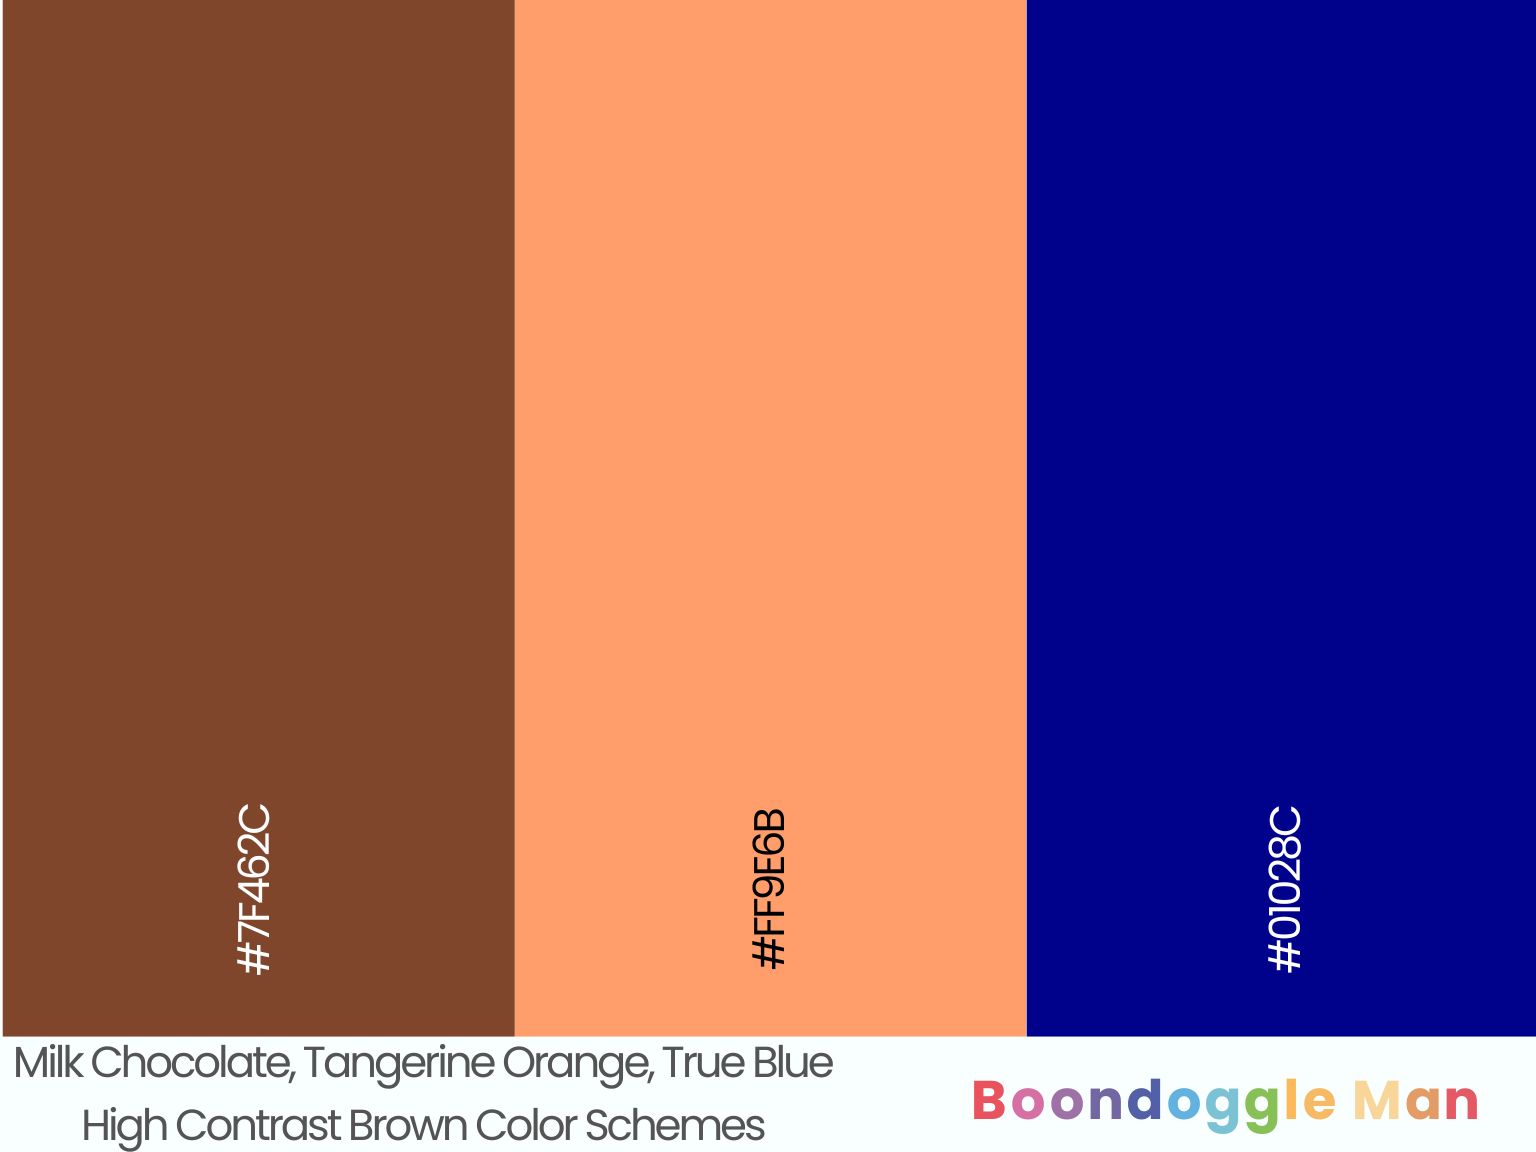 Milk Chocolate, Tangerine Orange, True Blue